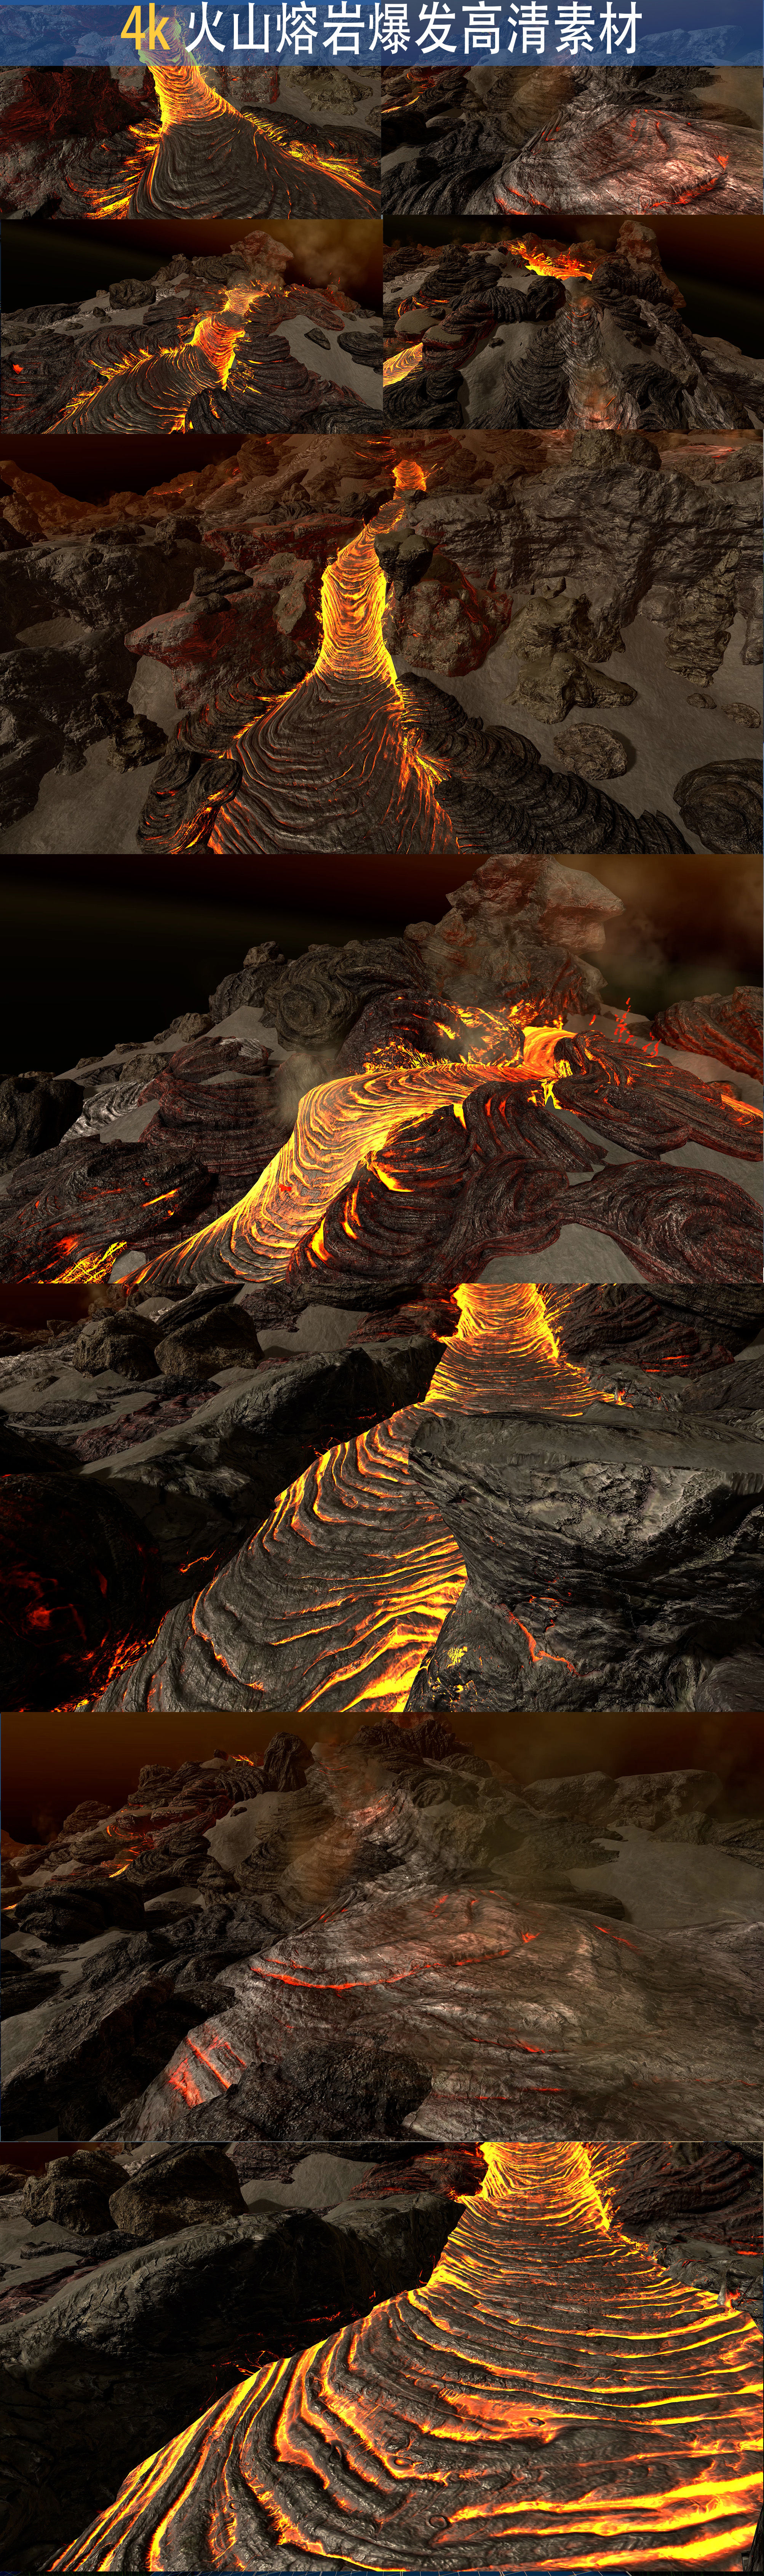 中科大揭示五大连池火山区微山火山高分辨率岩浆囊形态及部分熔融状态